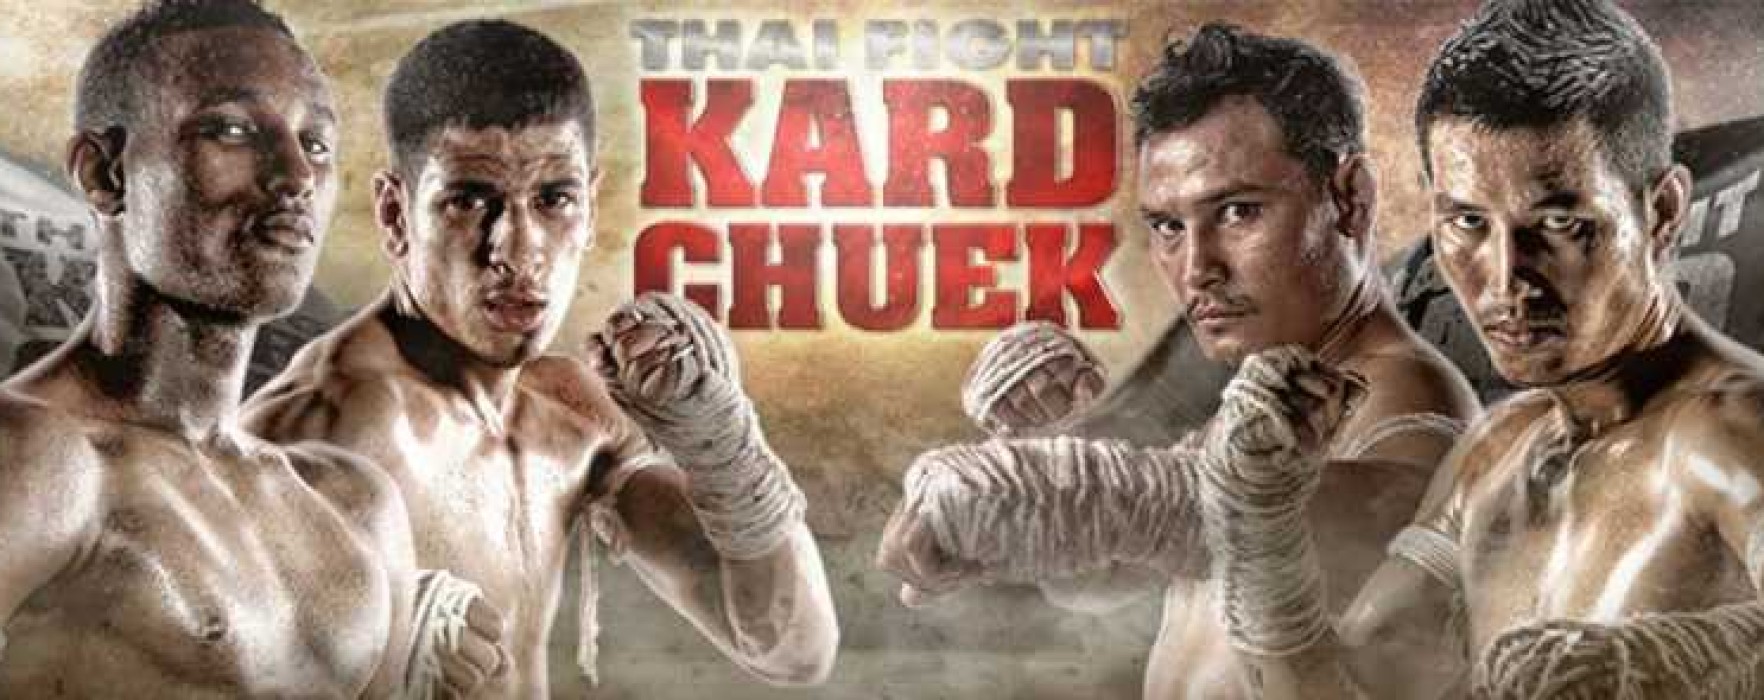 Thai Fight Kard Chuek – Semifinal – Videos